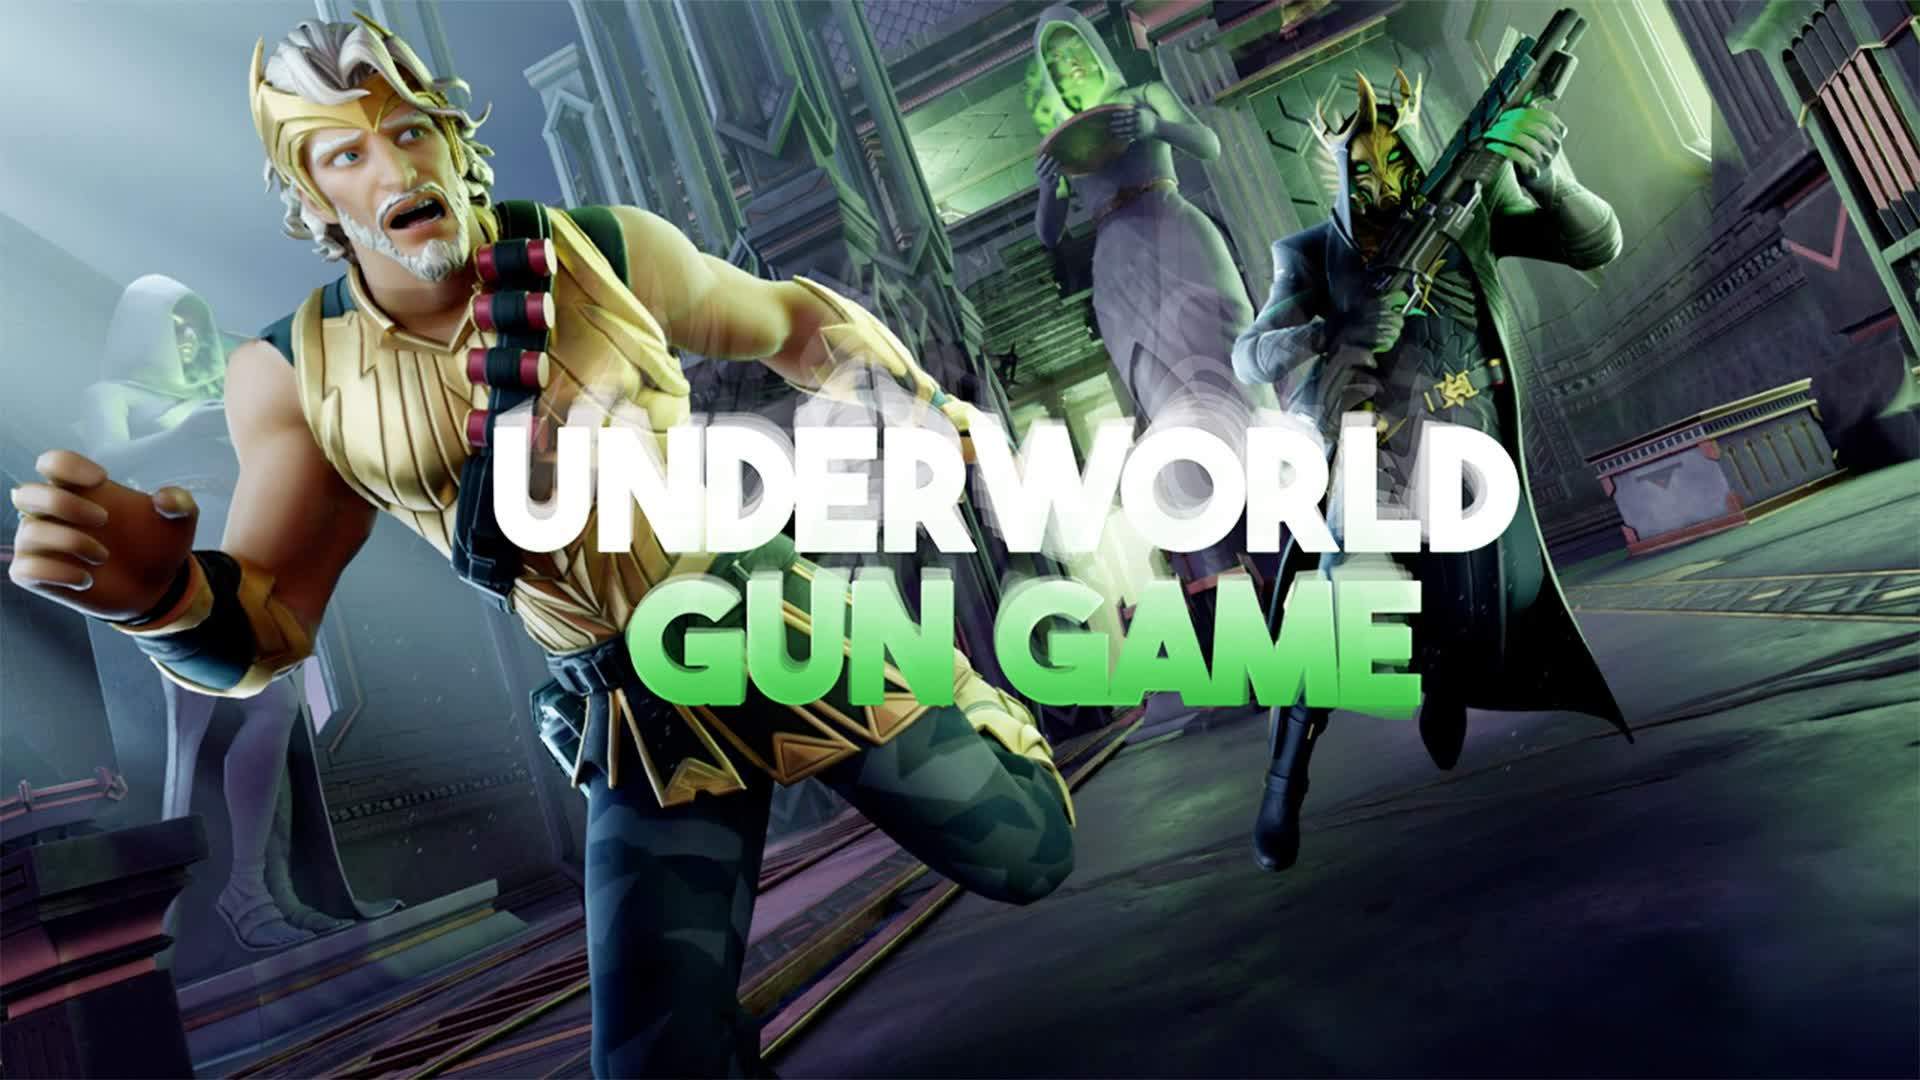 UNDERWORLD - GUN GAME